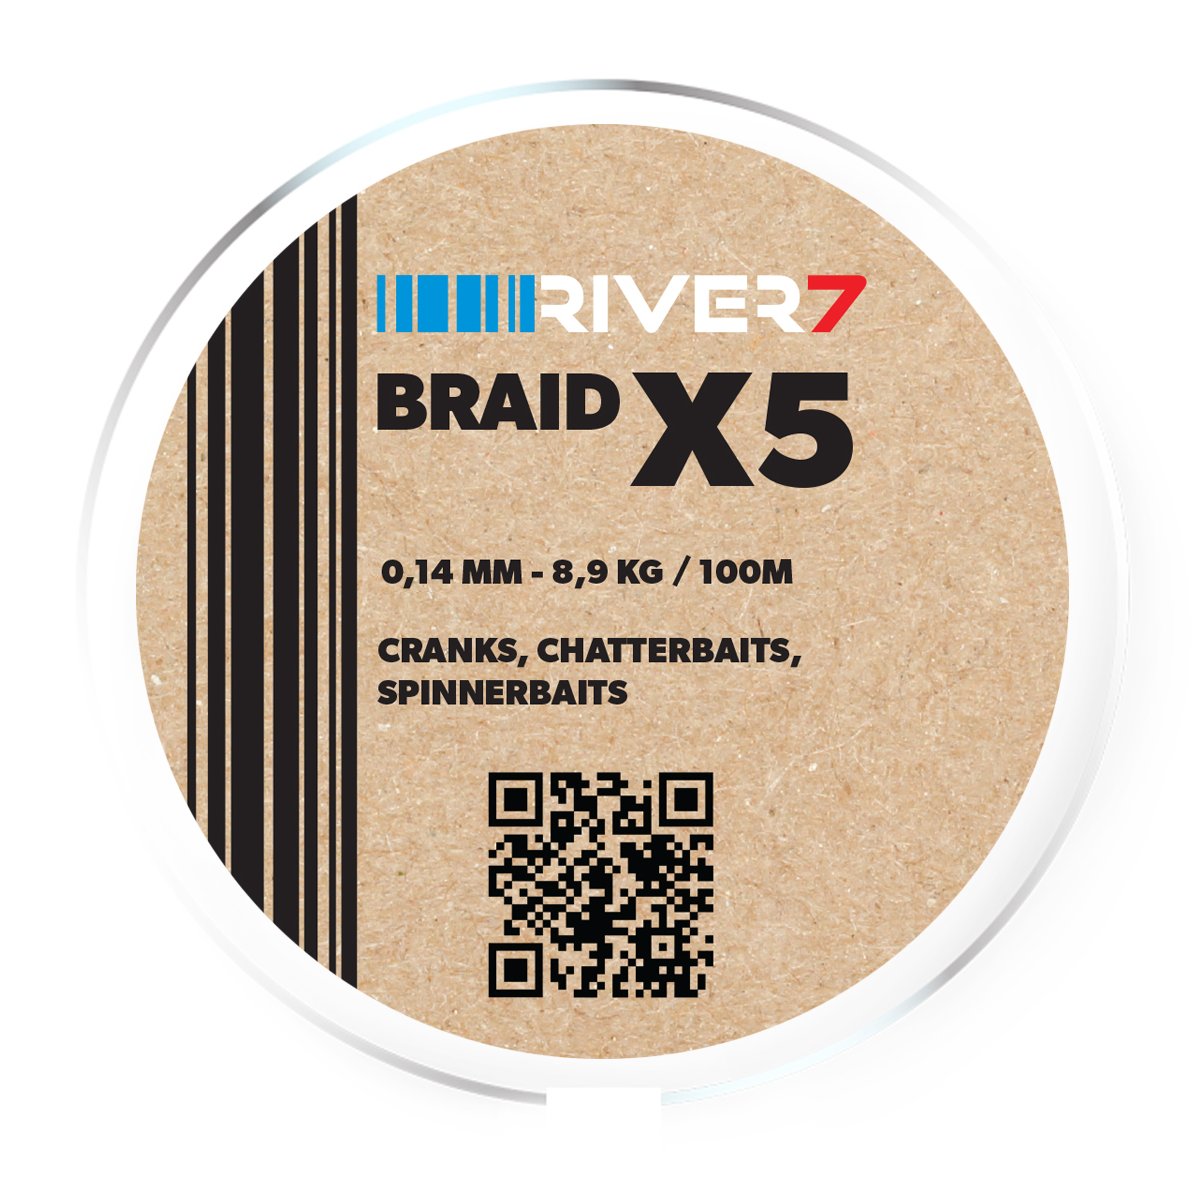 River7 X5 Braid -  0.14 mm